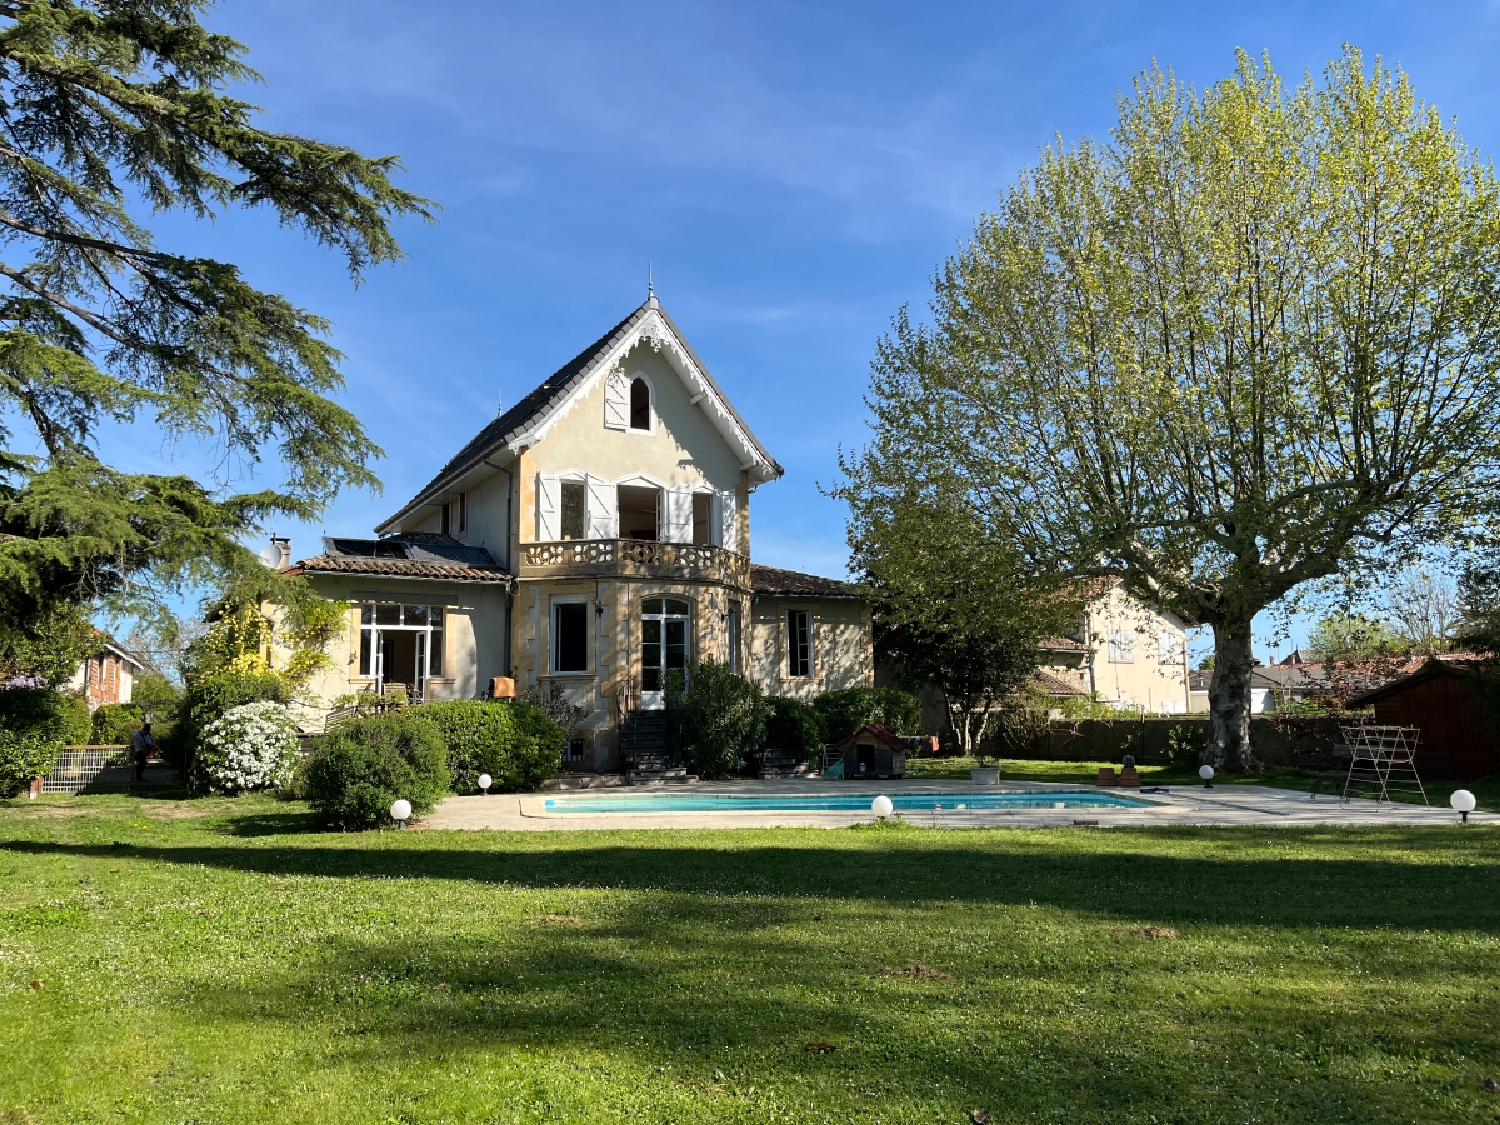  à vendre maison Ardiège Haute-Garonne 2